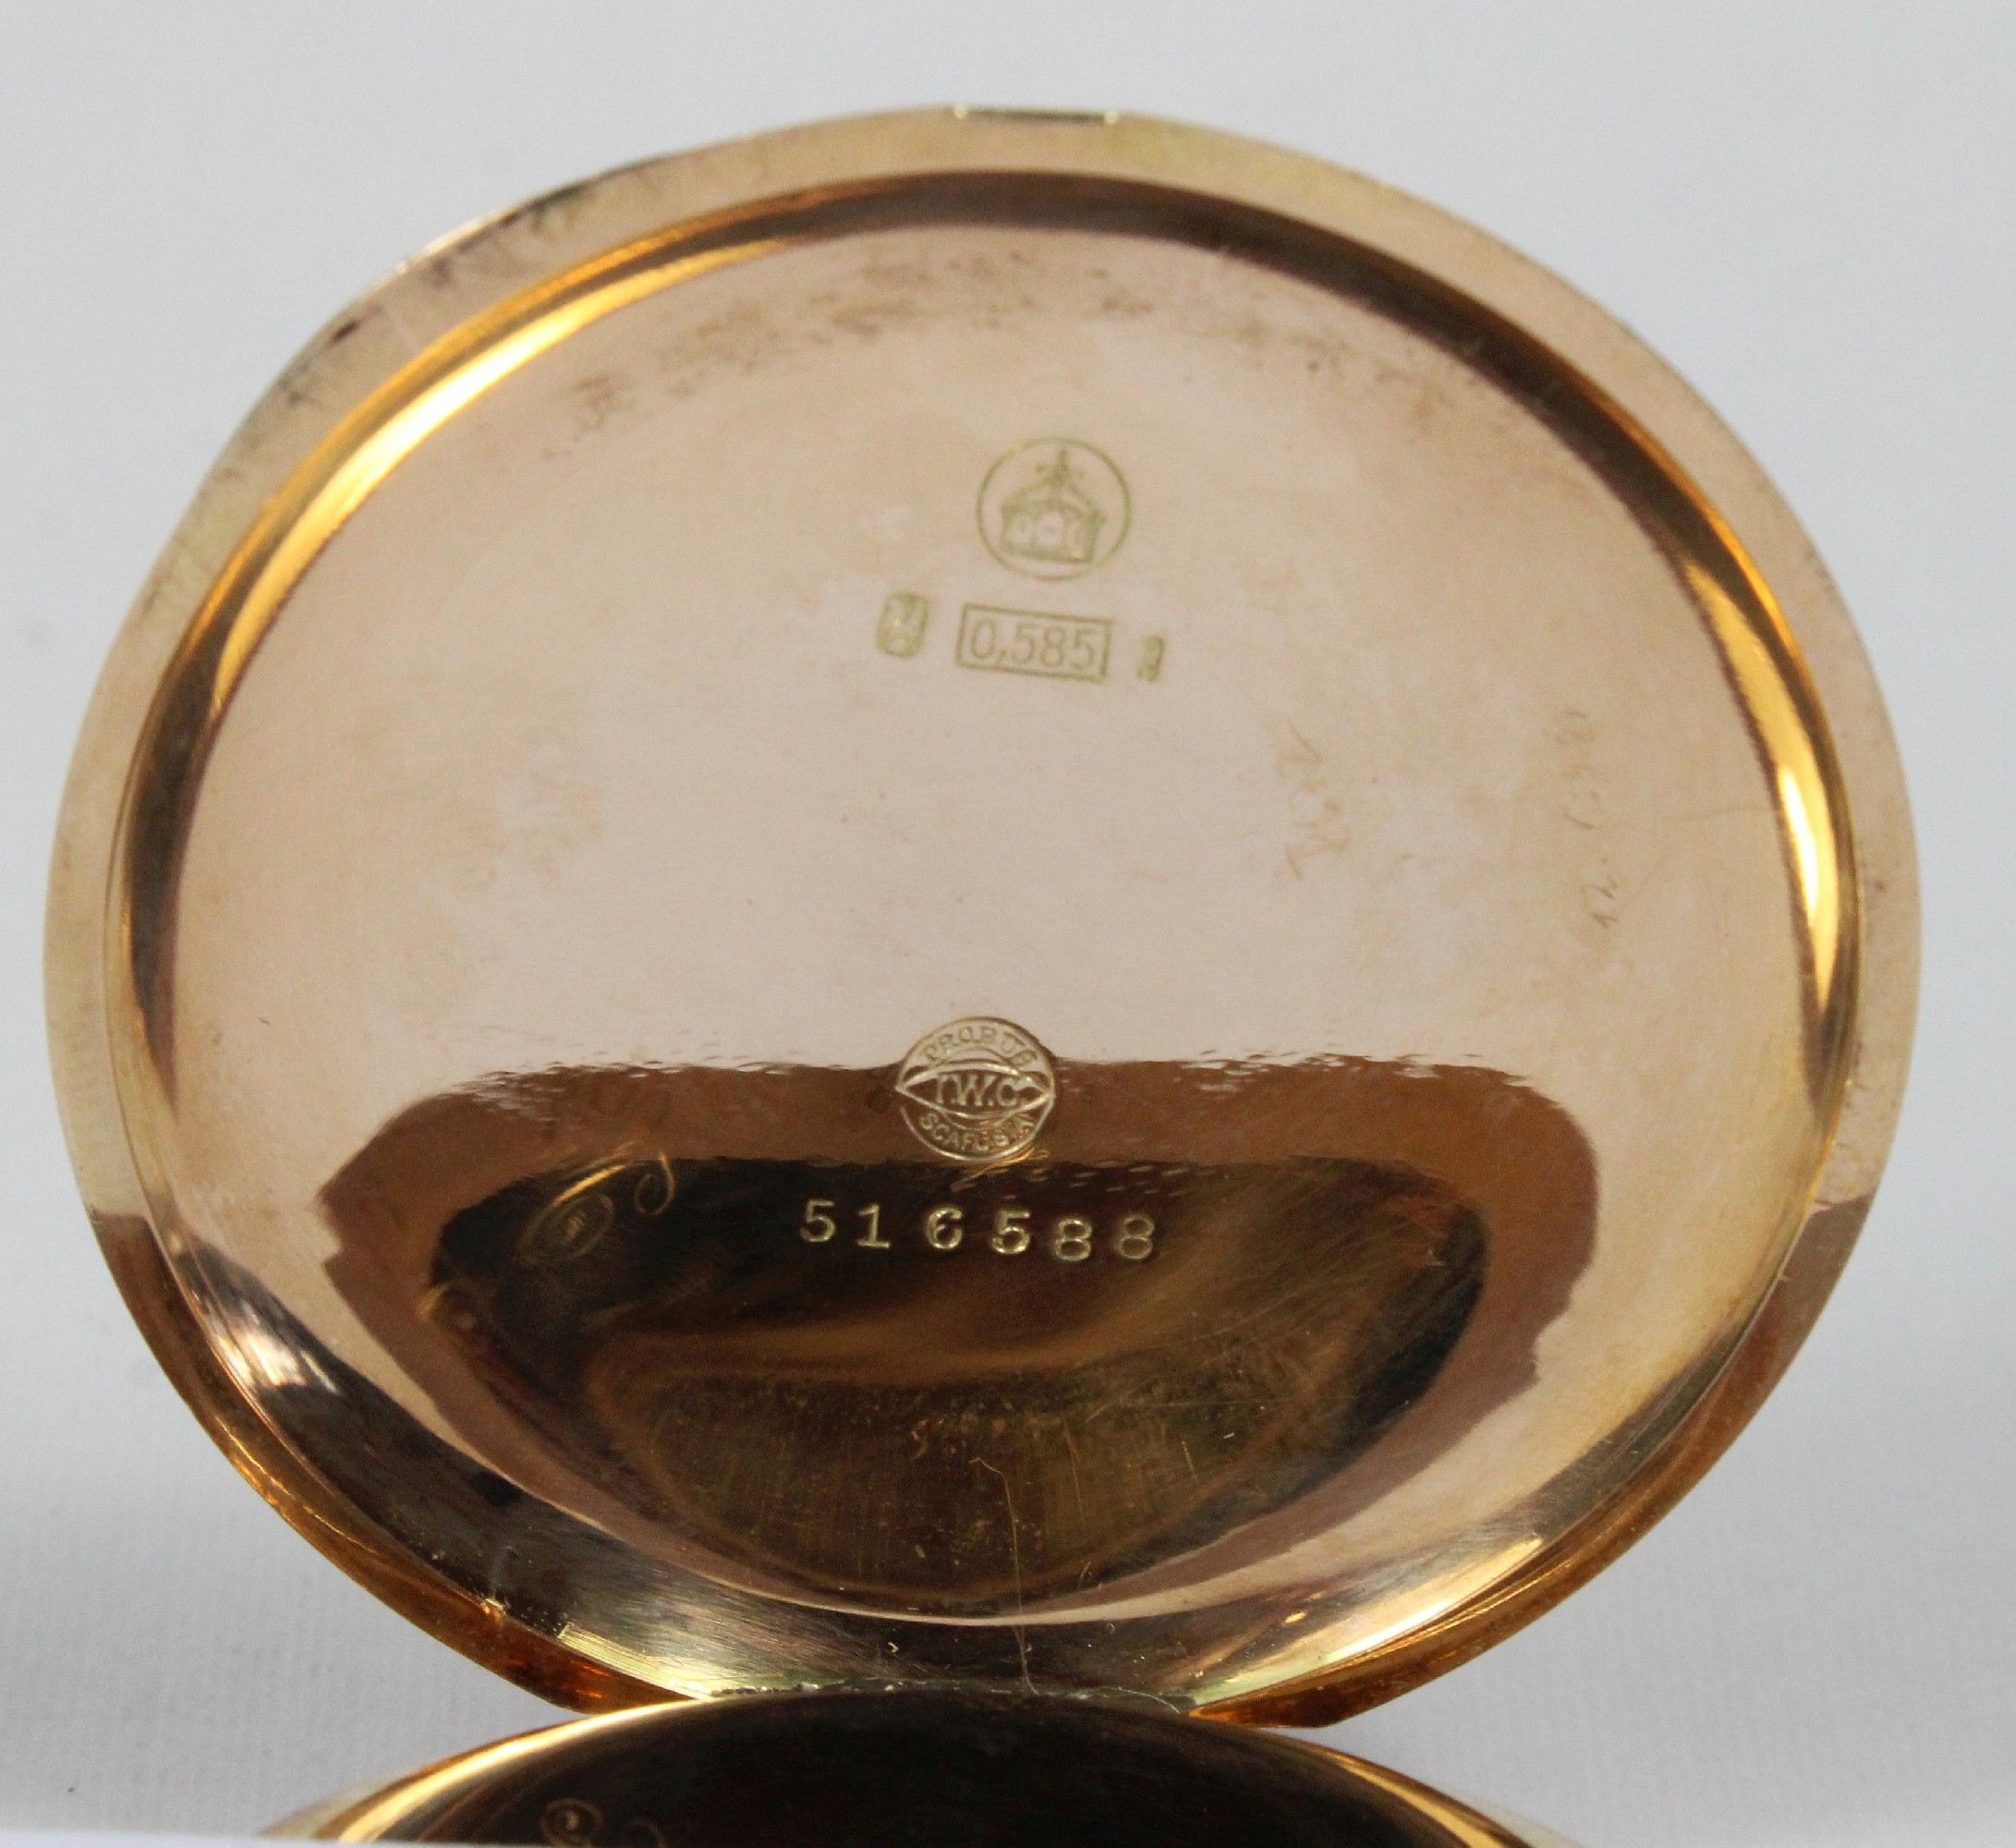 IWC (PROBUS SCAFUSIA) Herrentaschenuhr, 585er Gold, Reichsgoldstempel, Modellnummer: 516588, Gewich - Image 7 of 7